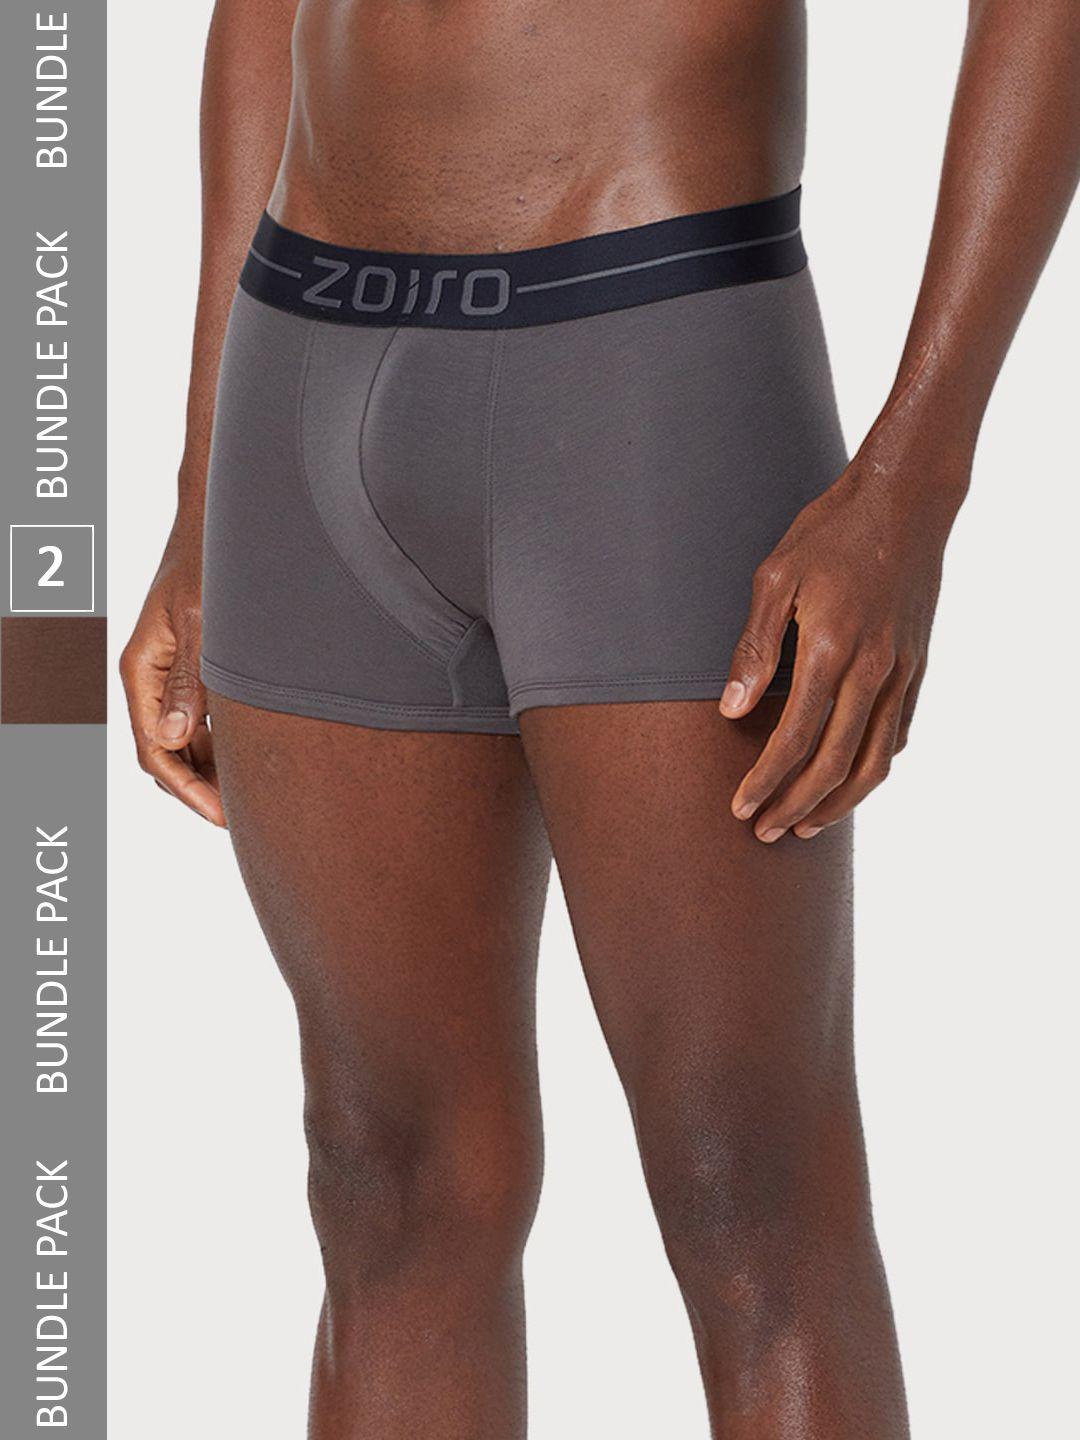 zoiro-men-pack-of-2-outer-elastic-soft-feel-trunks